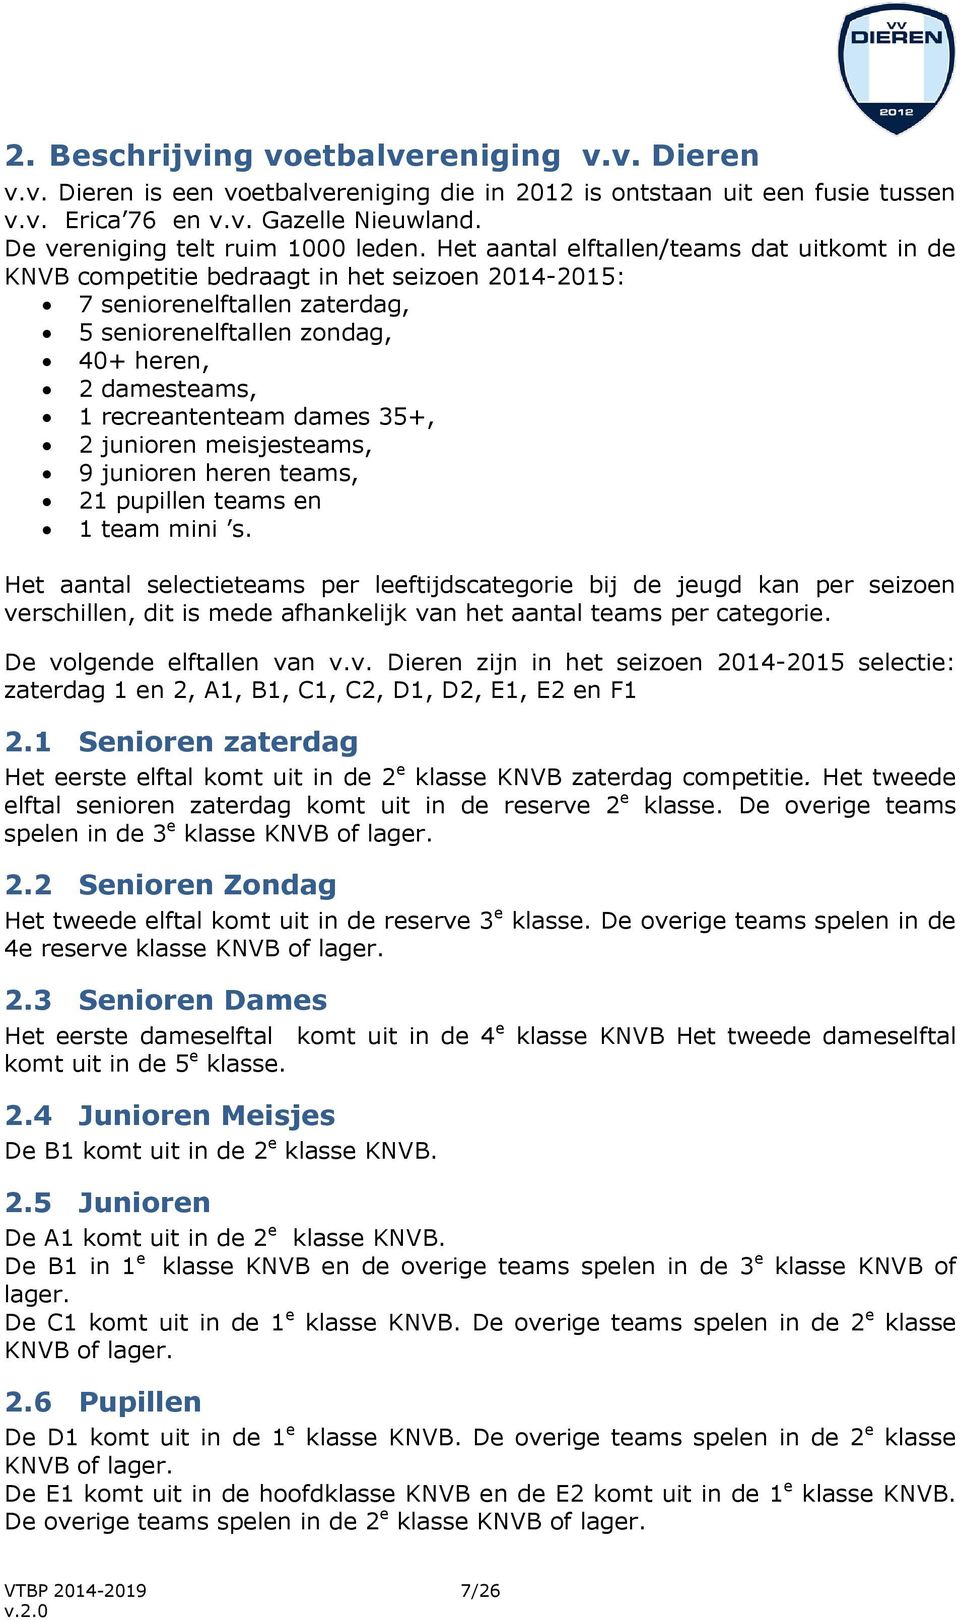 Het aantal elftallen/teams dat uitkomt in de KNVB competitie bedraagt in het seizoen 2014-2015: 7 seniorenelftallen zaterdag, 5 seniorenelftallen zondag, 40+ heren, 2 damesteams, 1 recreantenteam